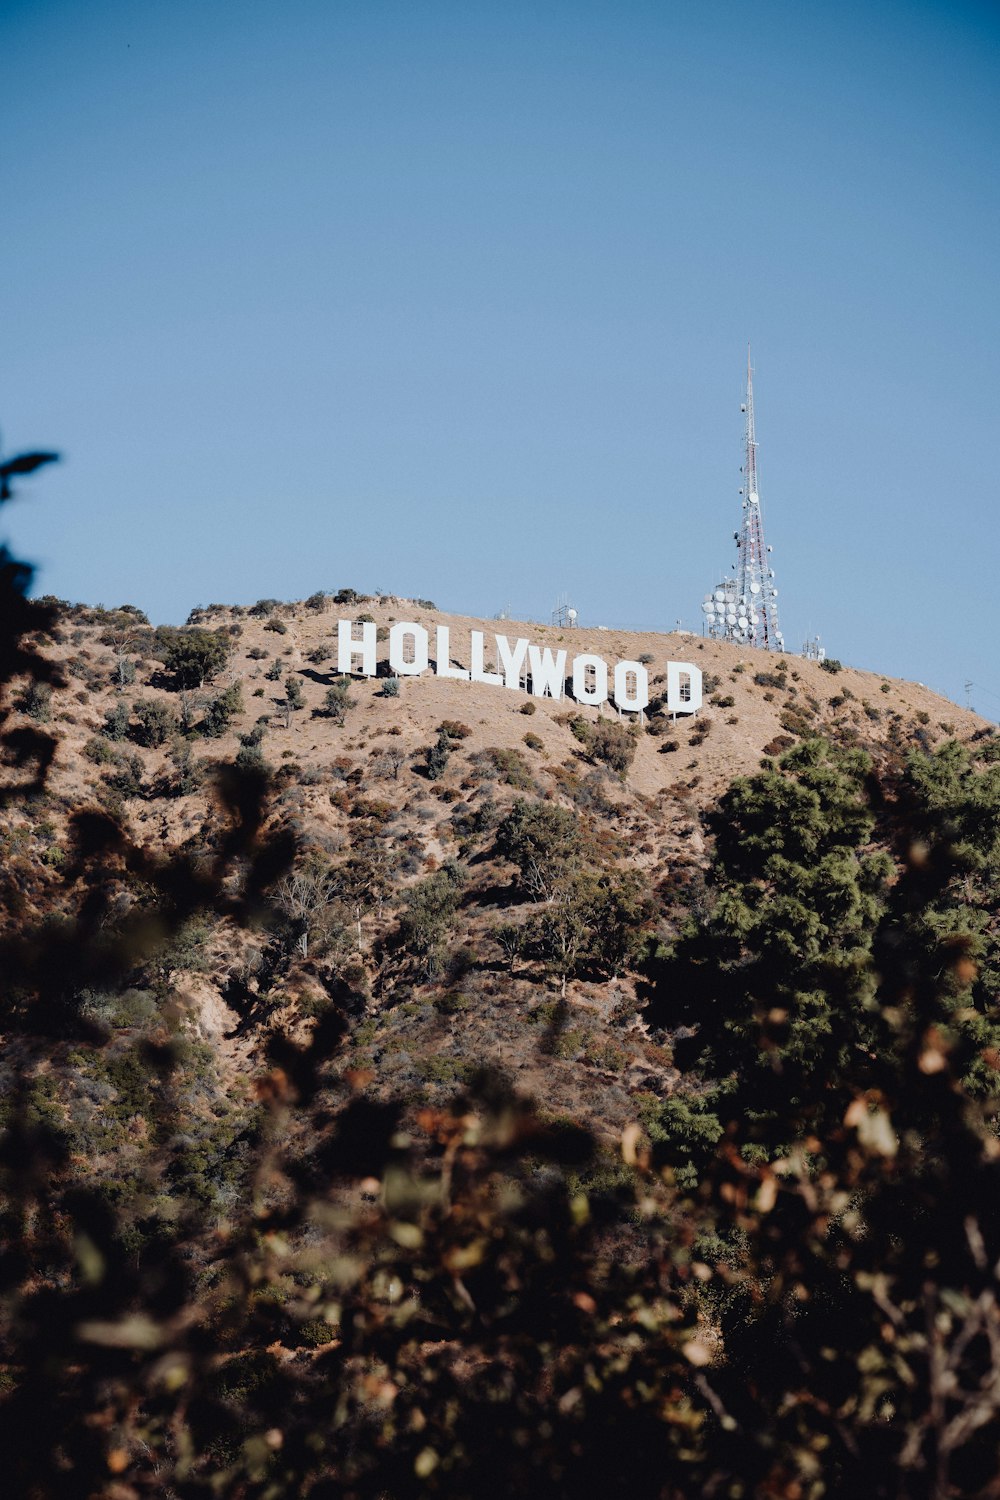 Le panneau Hollywood est au sommet d’une colline